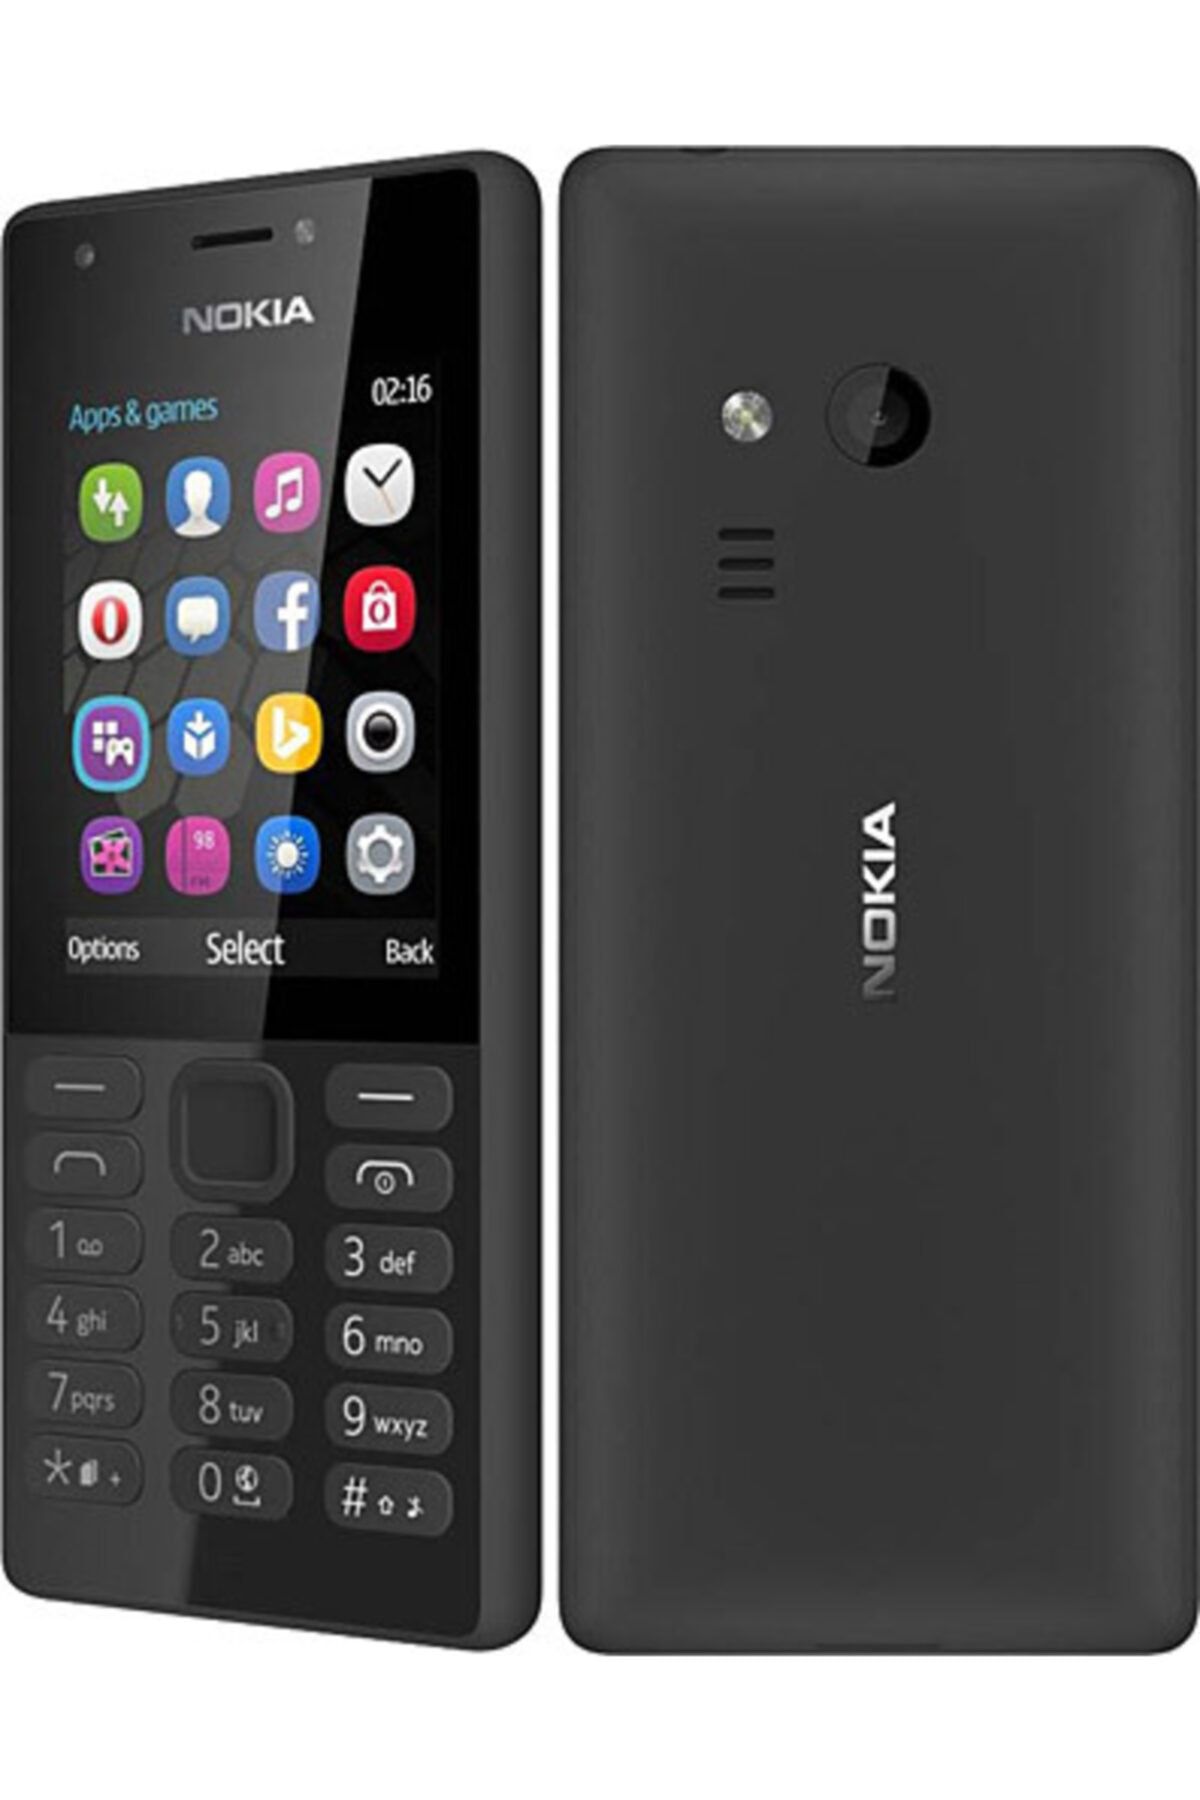 Nokia mobile phone. Nokia 216 Dual SIM. Nokia 216 (RM-1187). Nokia 216 (RM-1187) Dual SIM Black. Nokia 216 DS Black.